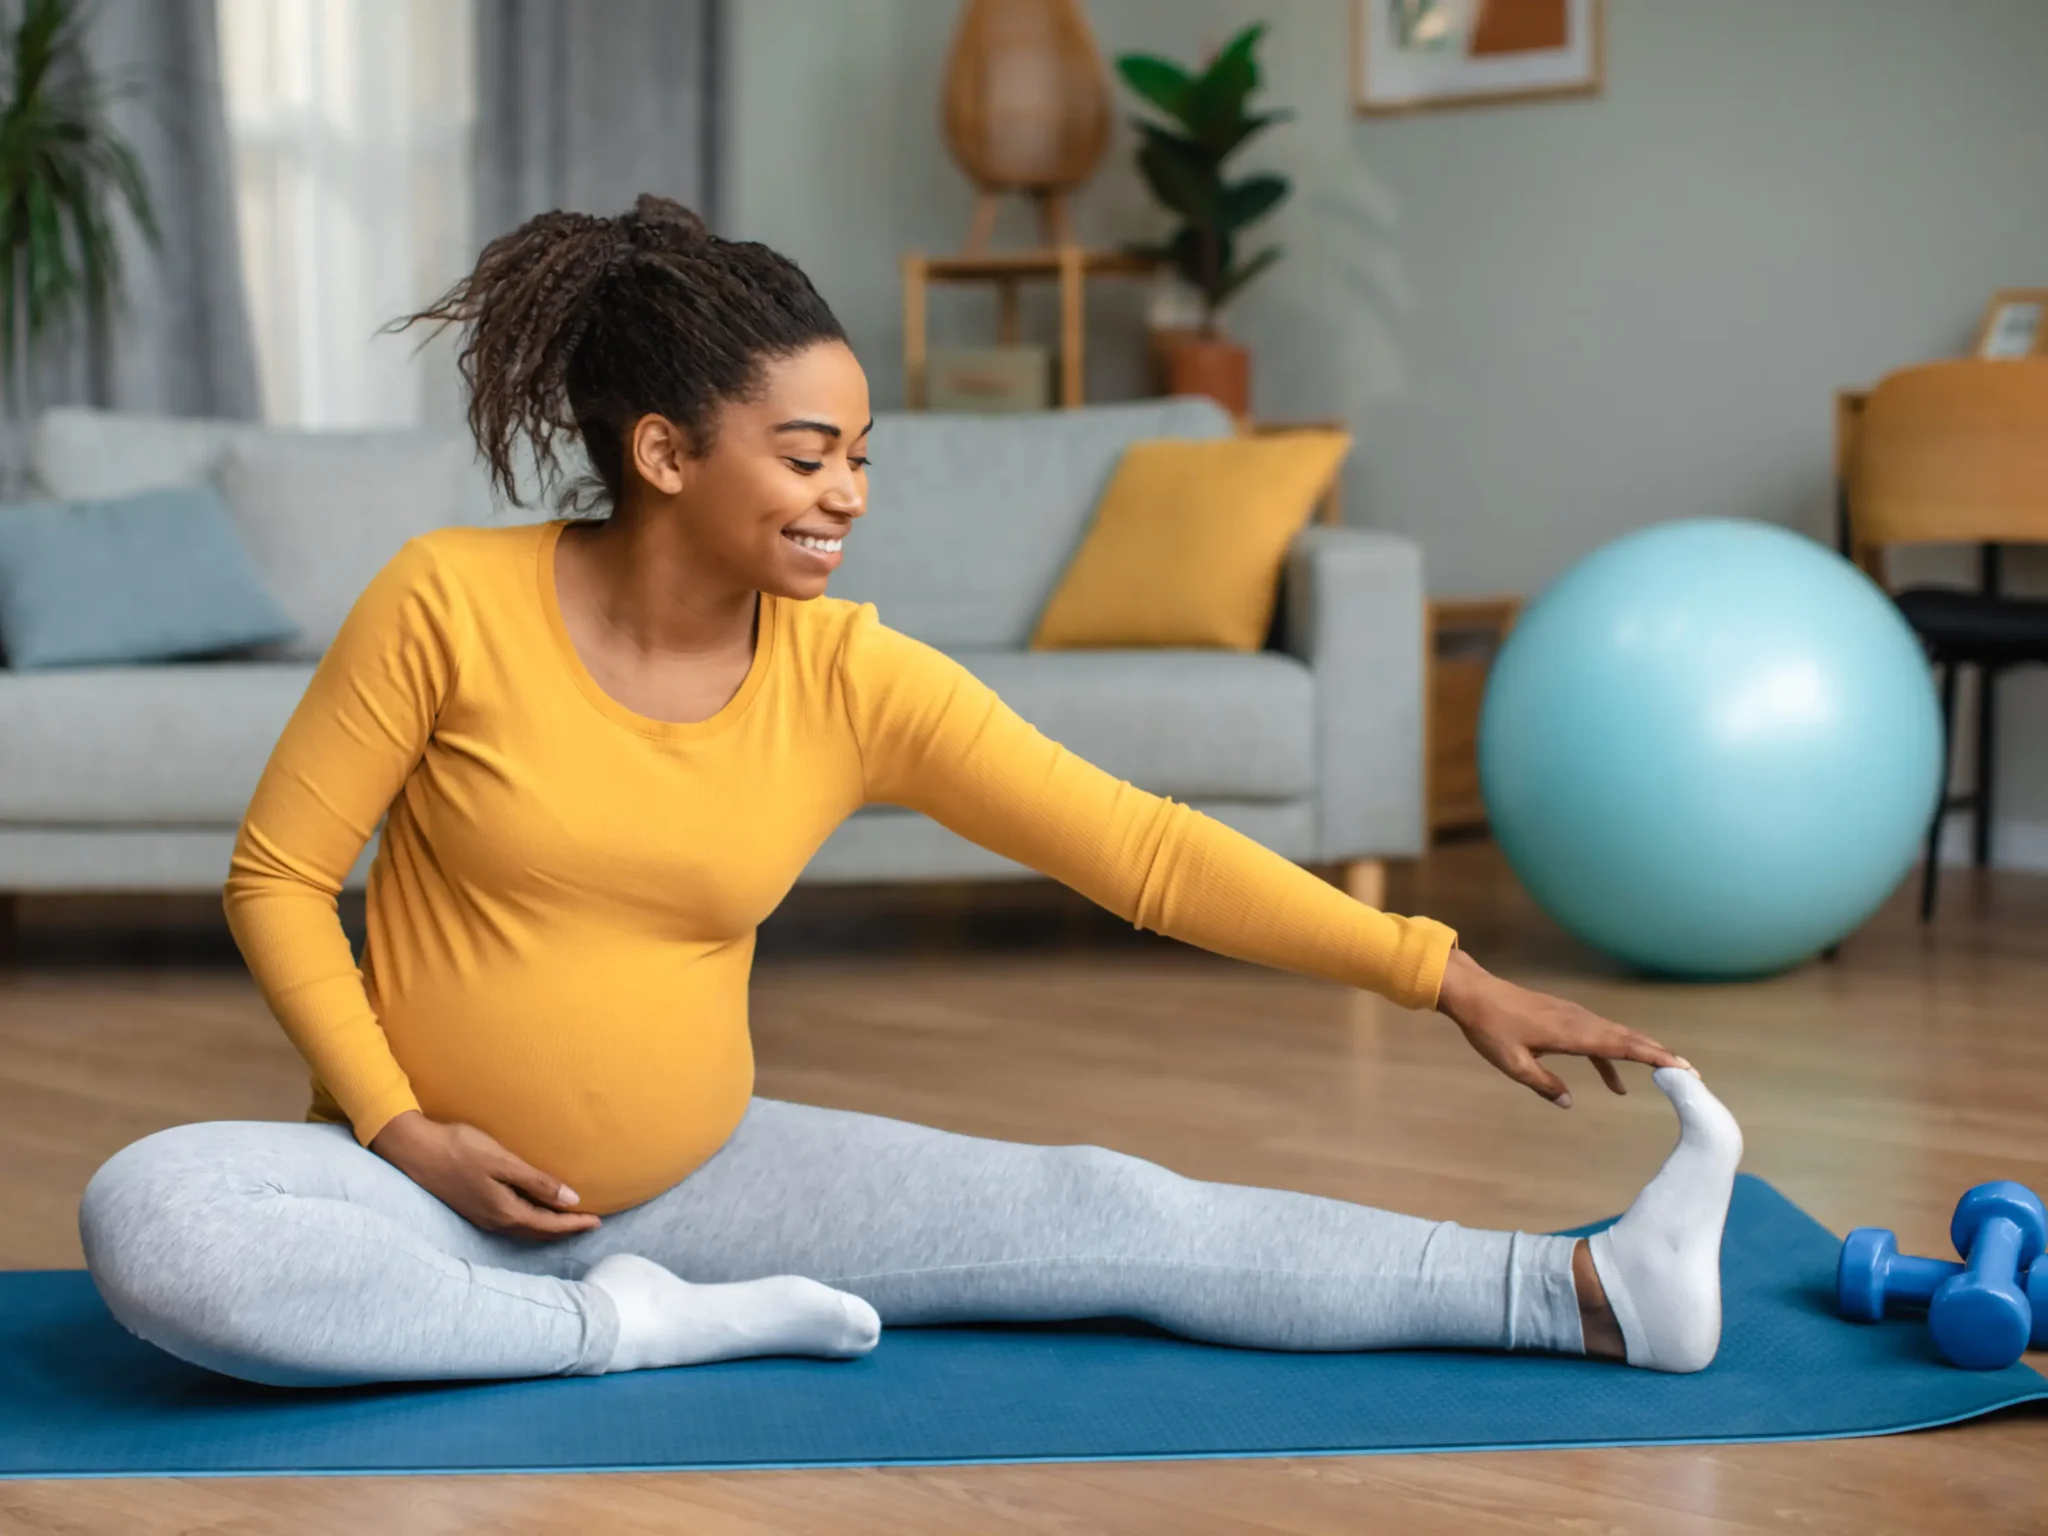 donna in gravidanza che fa yoga, praticare attività fisica moderata in gravidanza